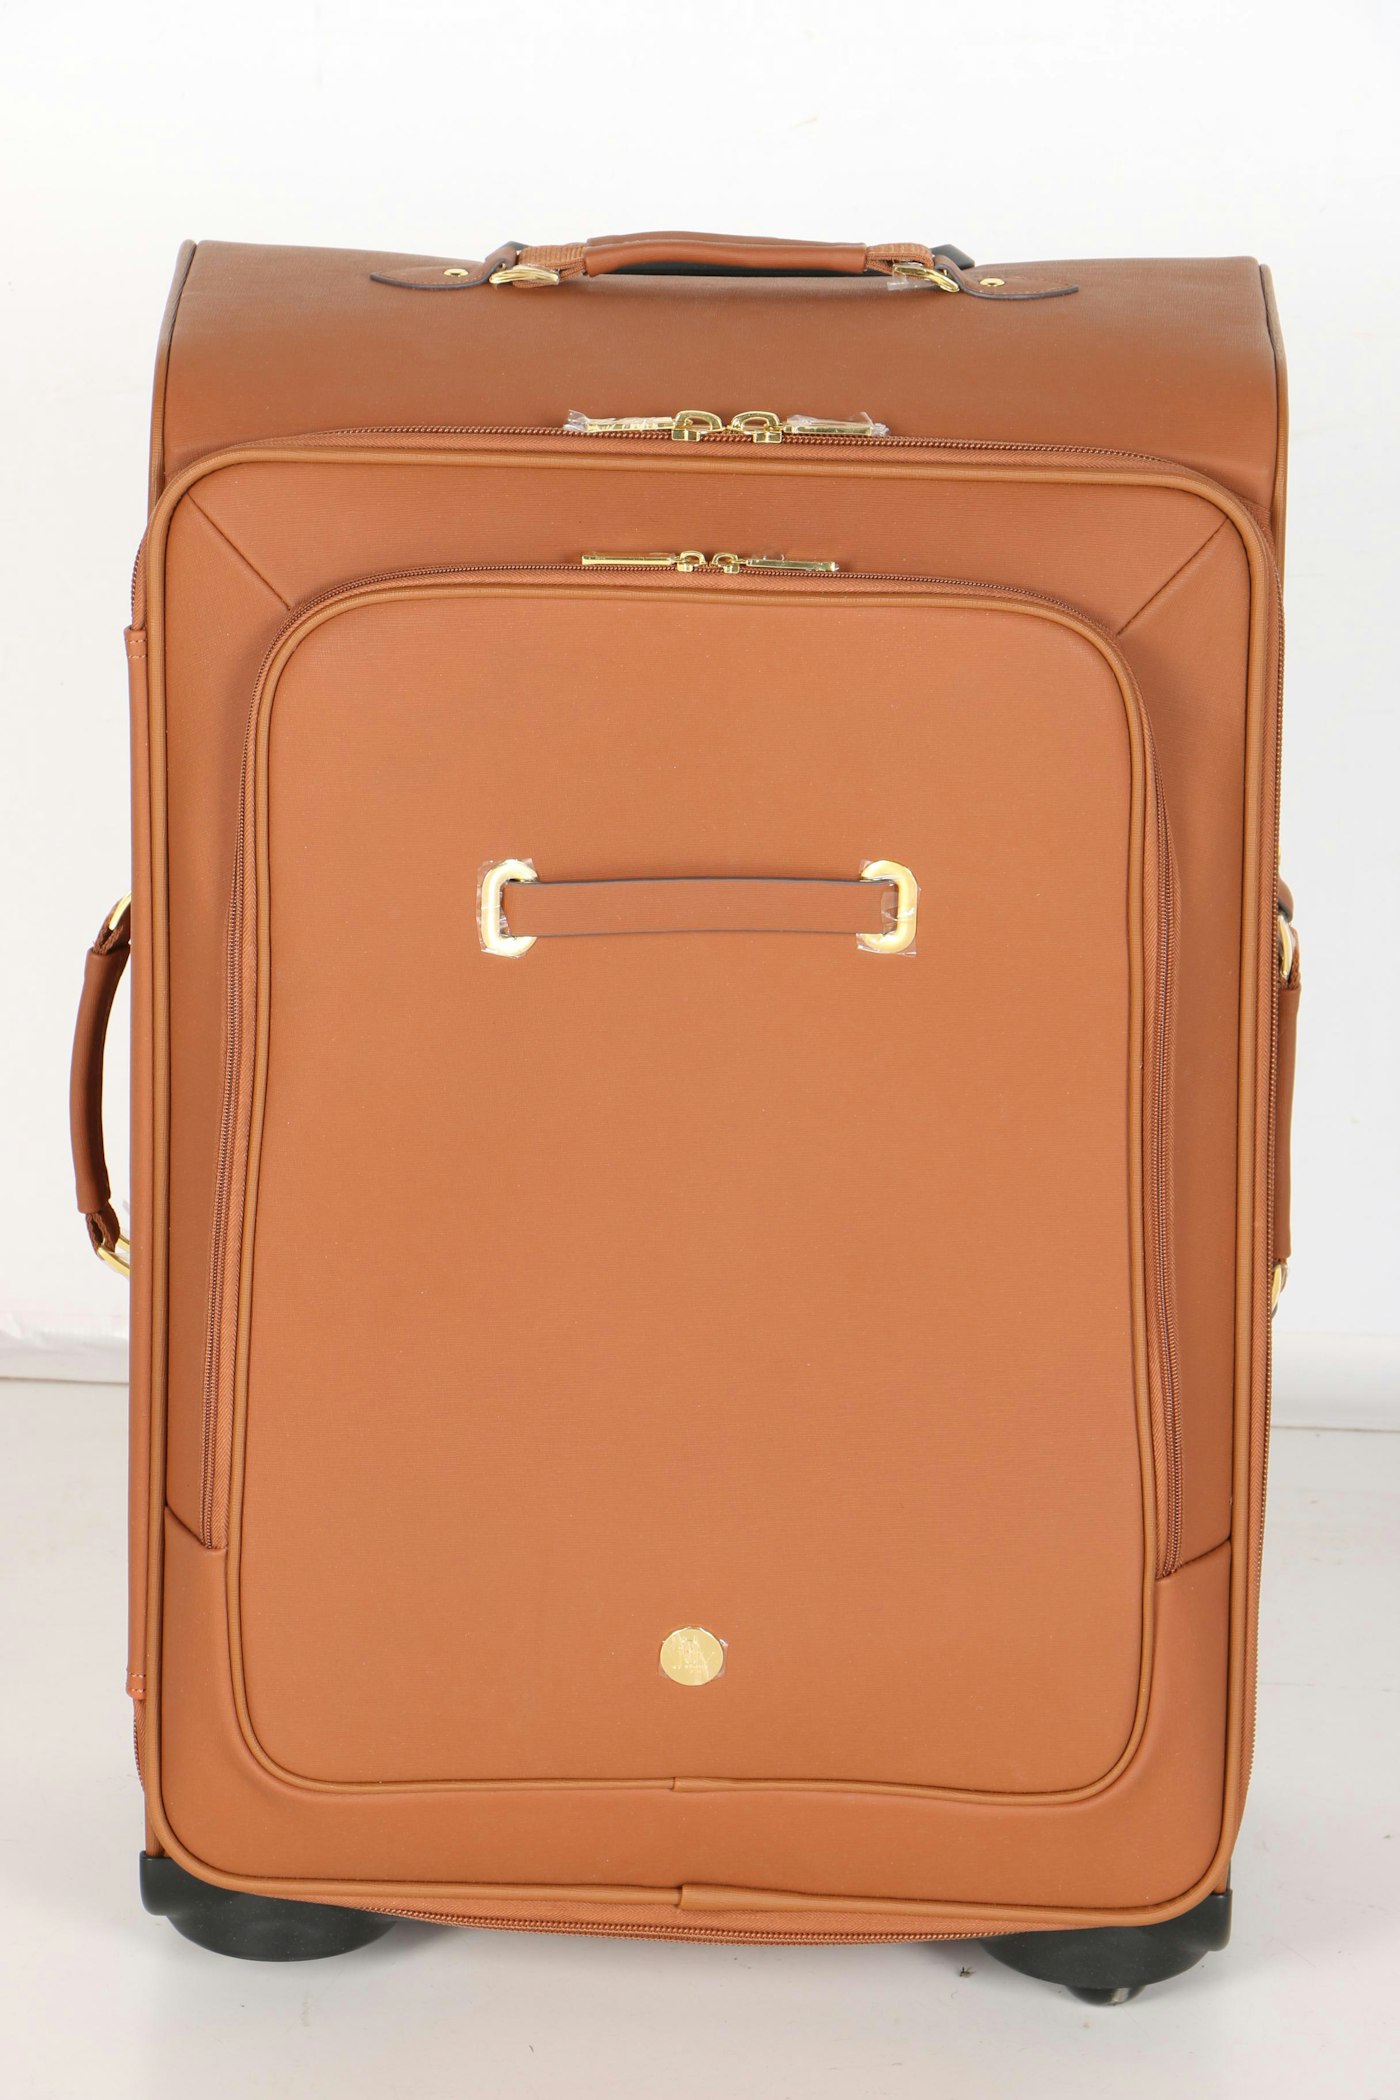 Joy Mangano Luggage | EBTH